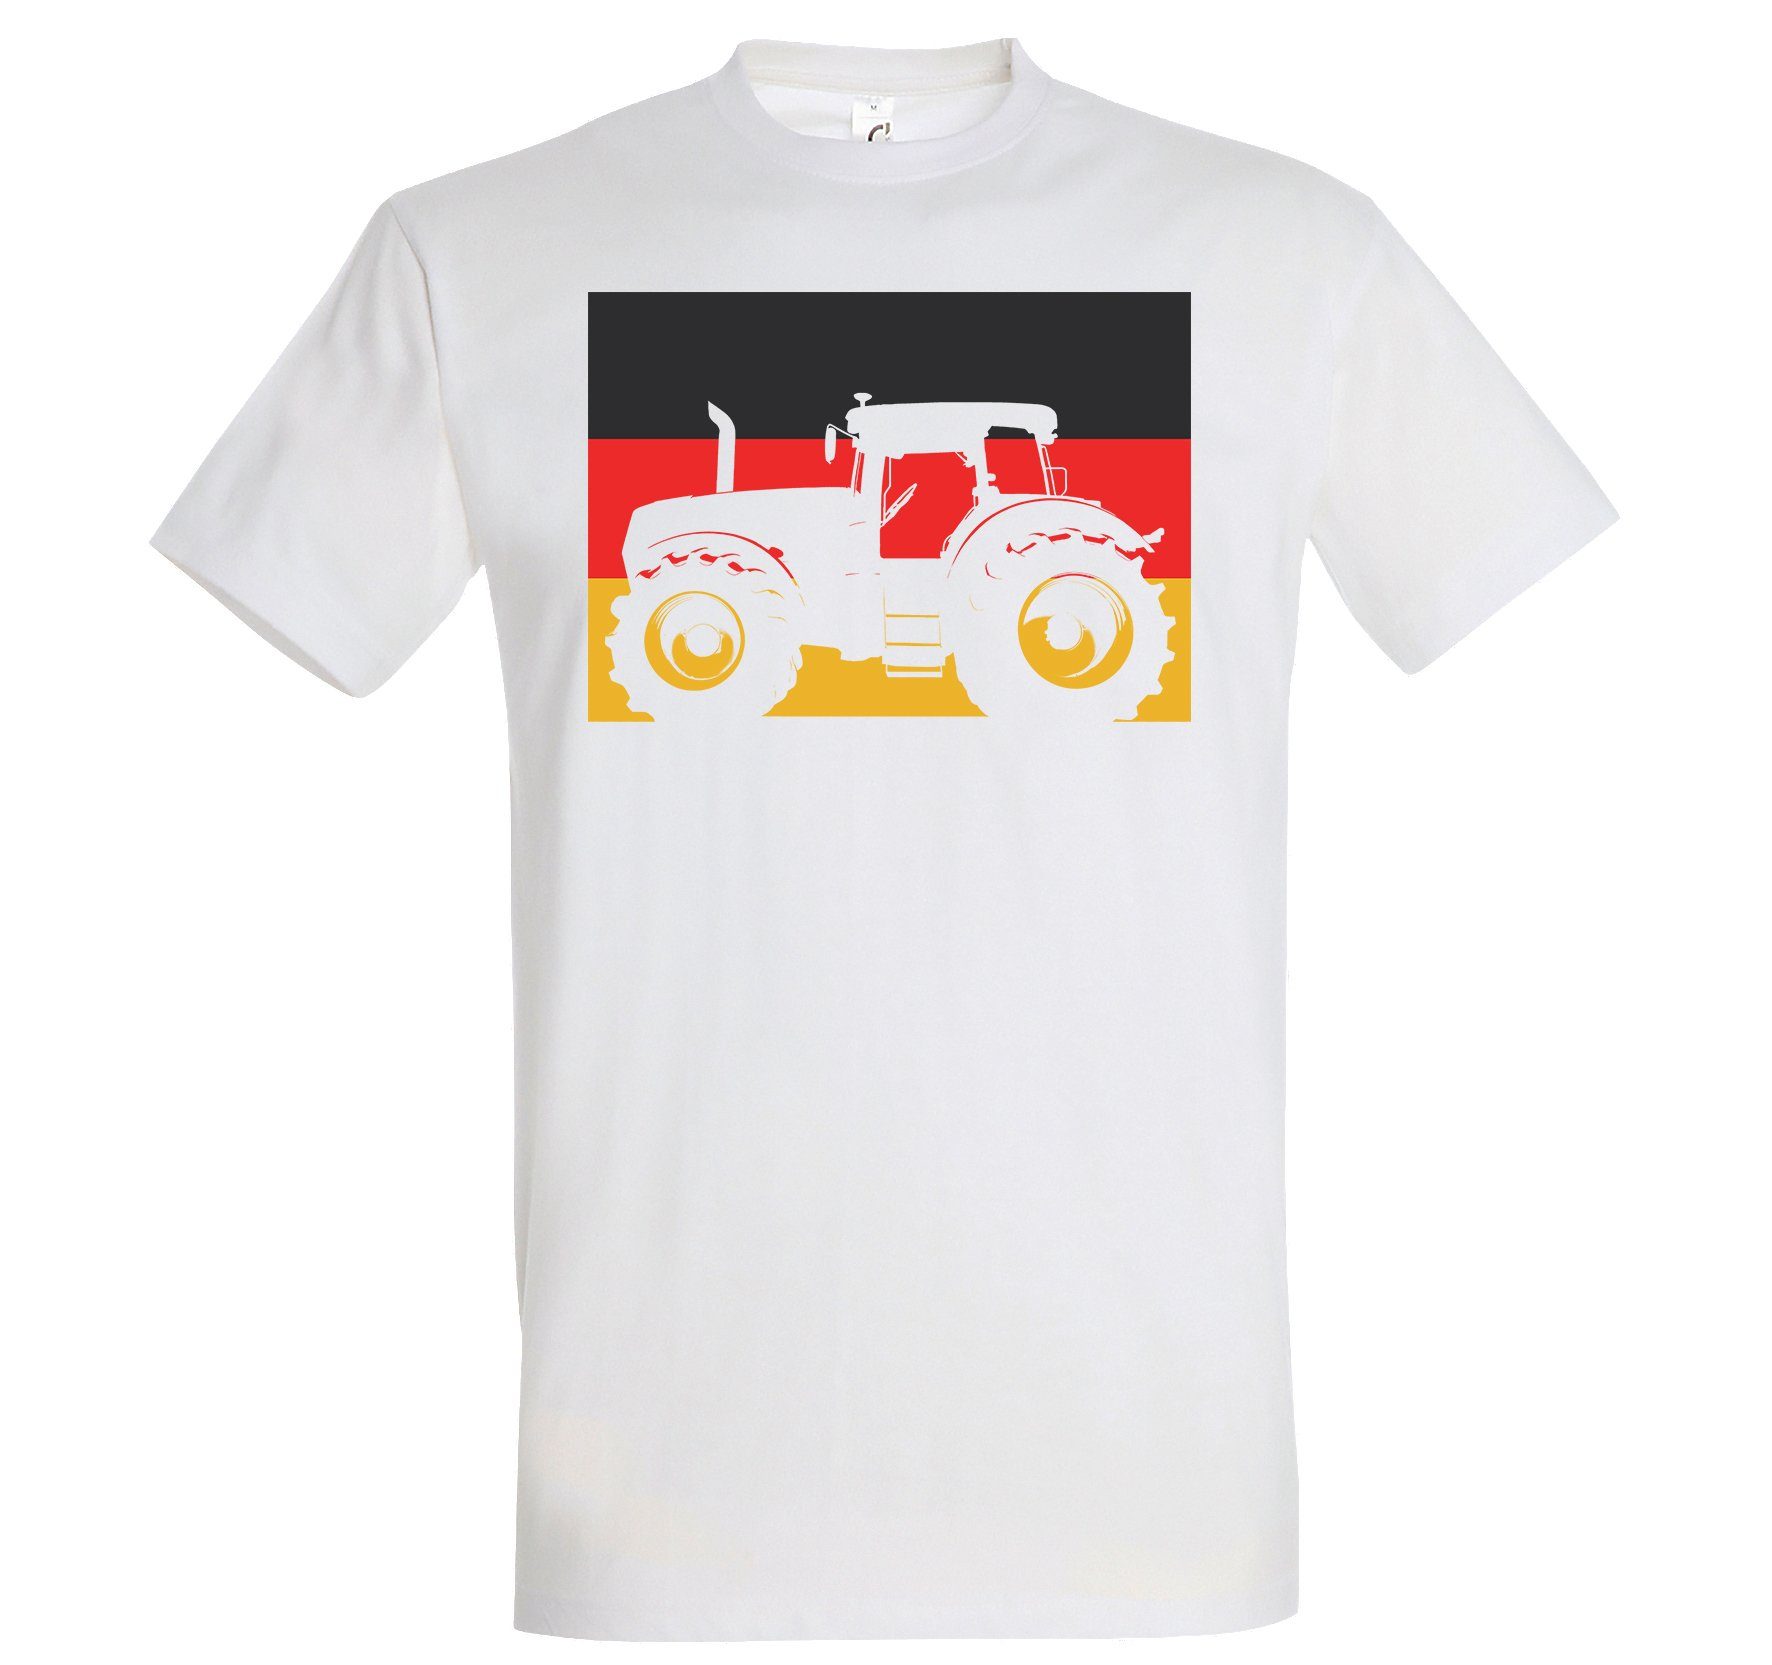 lustigem Deutschland Designz Weiß Youth T-Shirt Spruch T-Shirt Herren mit Traktor